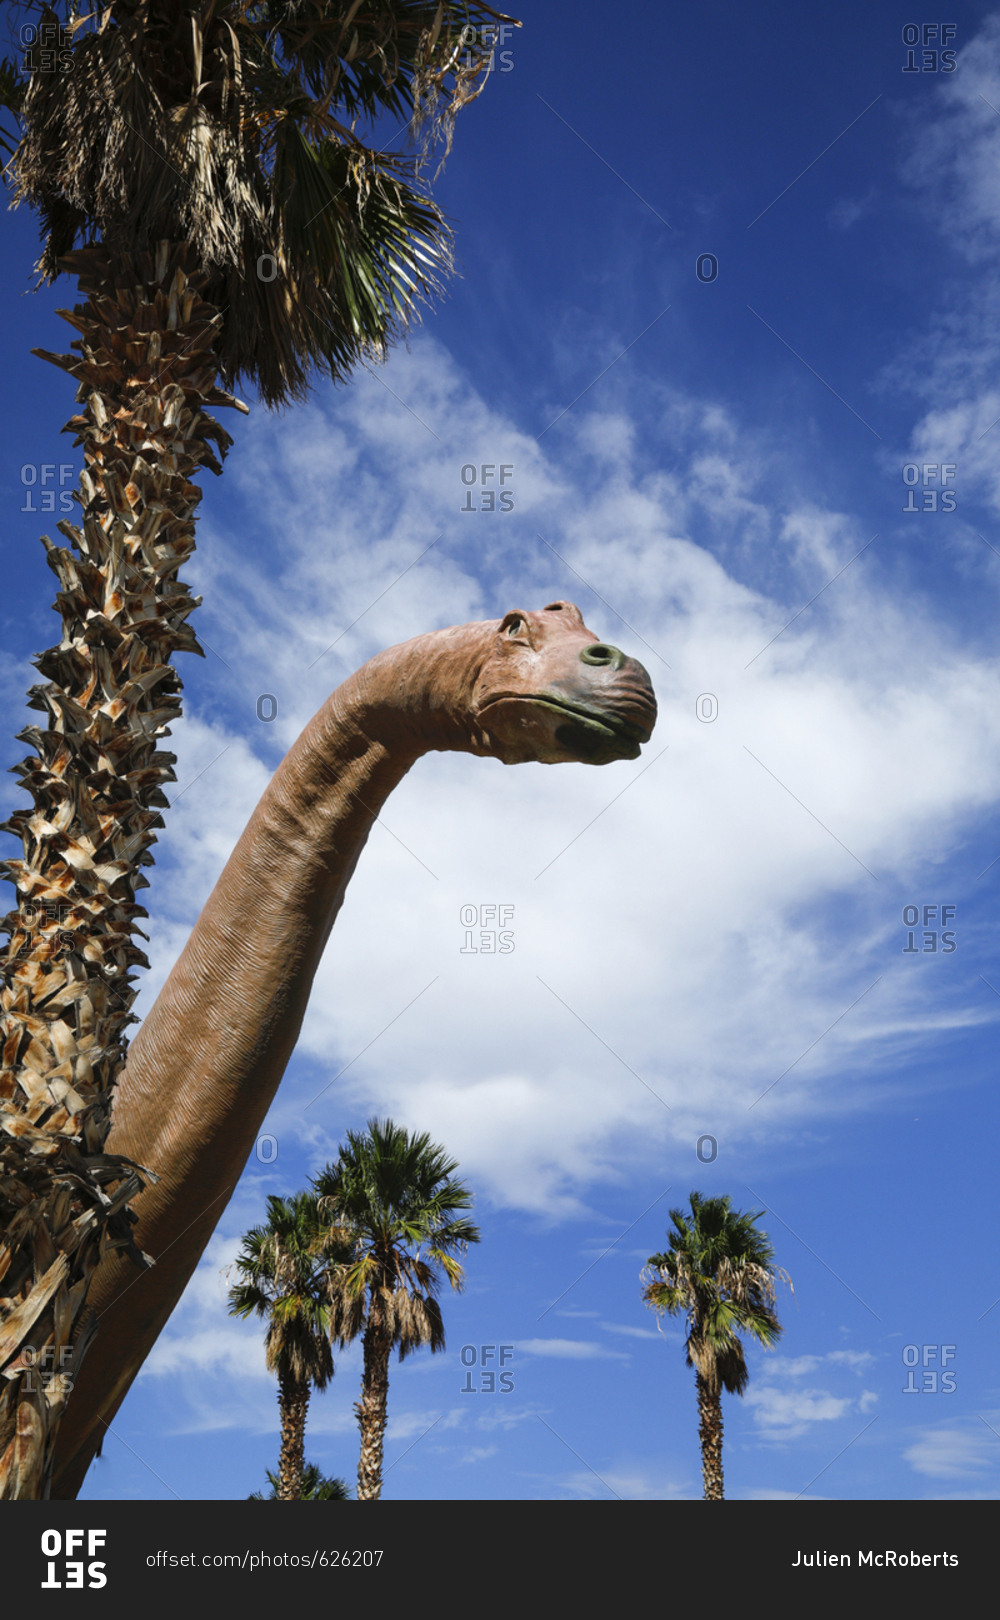 Dinosaur sculpture at roadside attraction